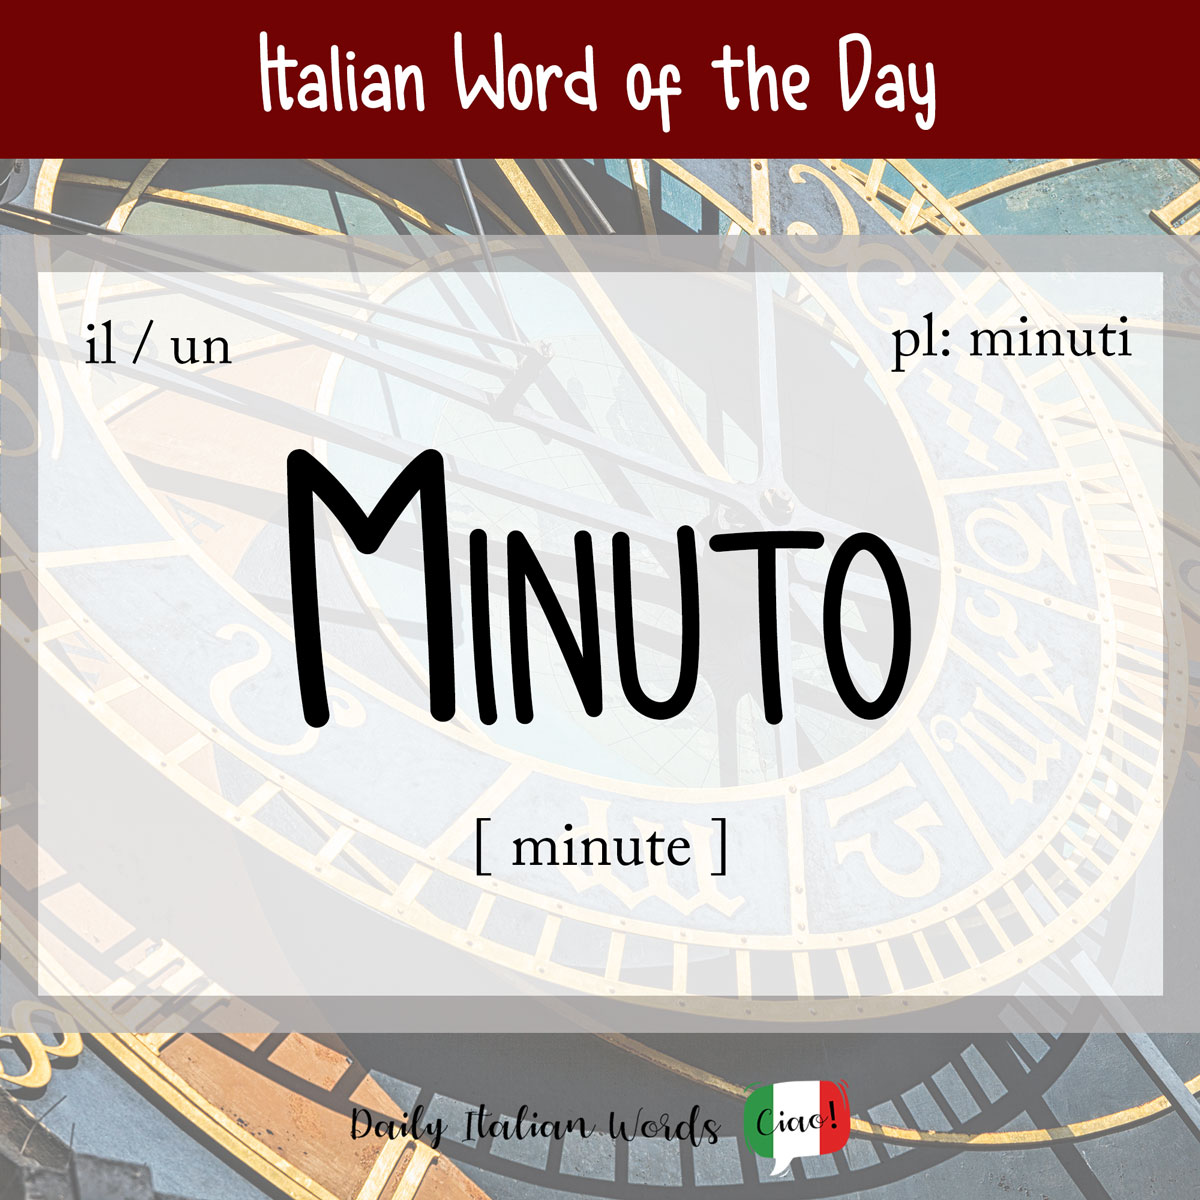 Daily Italian: Minuto (minutes)